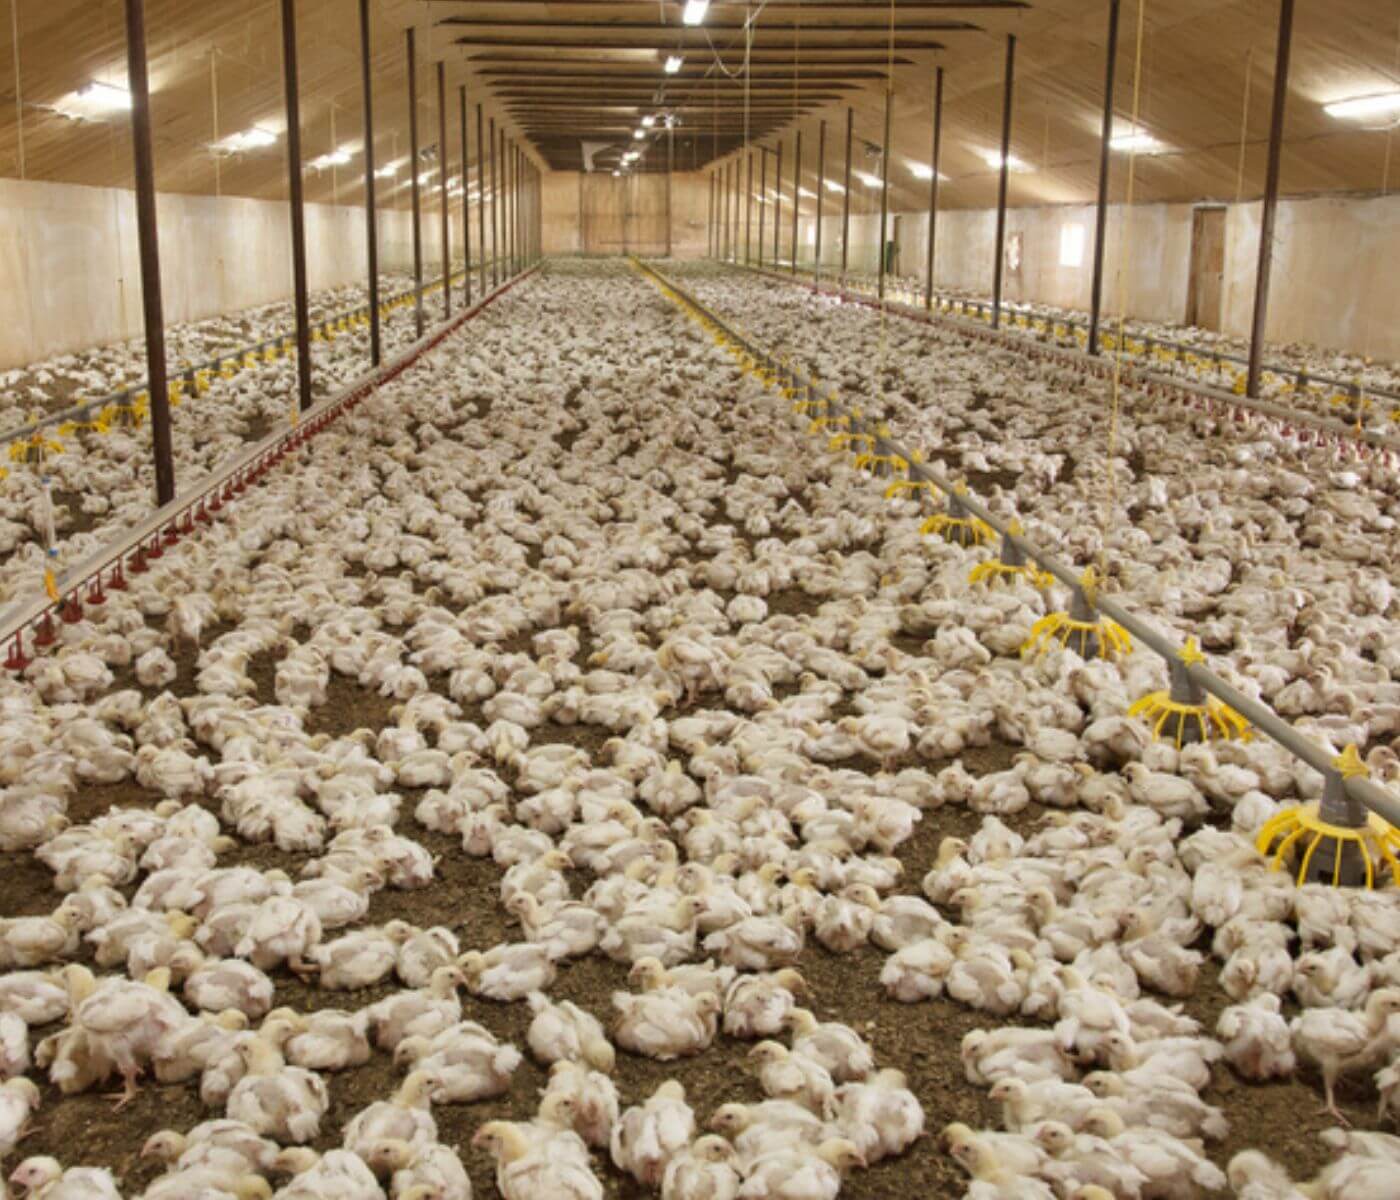 إنتاج الدجاج في الإتحاد الأوروبي سيبقى مستقرًا بالرغم من إنفلونزا الطيور شديدة الإمراض